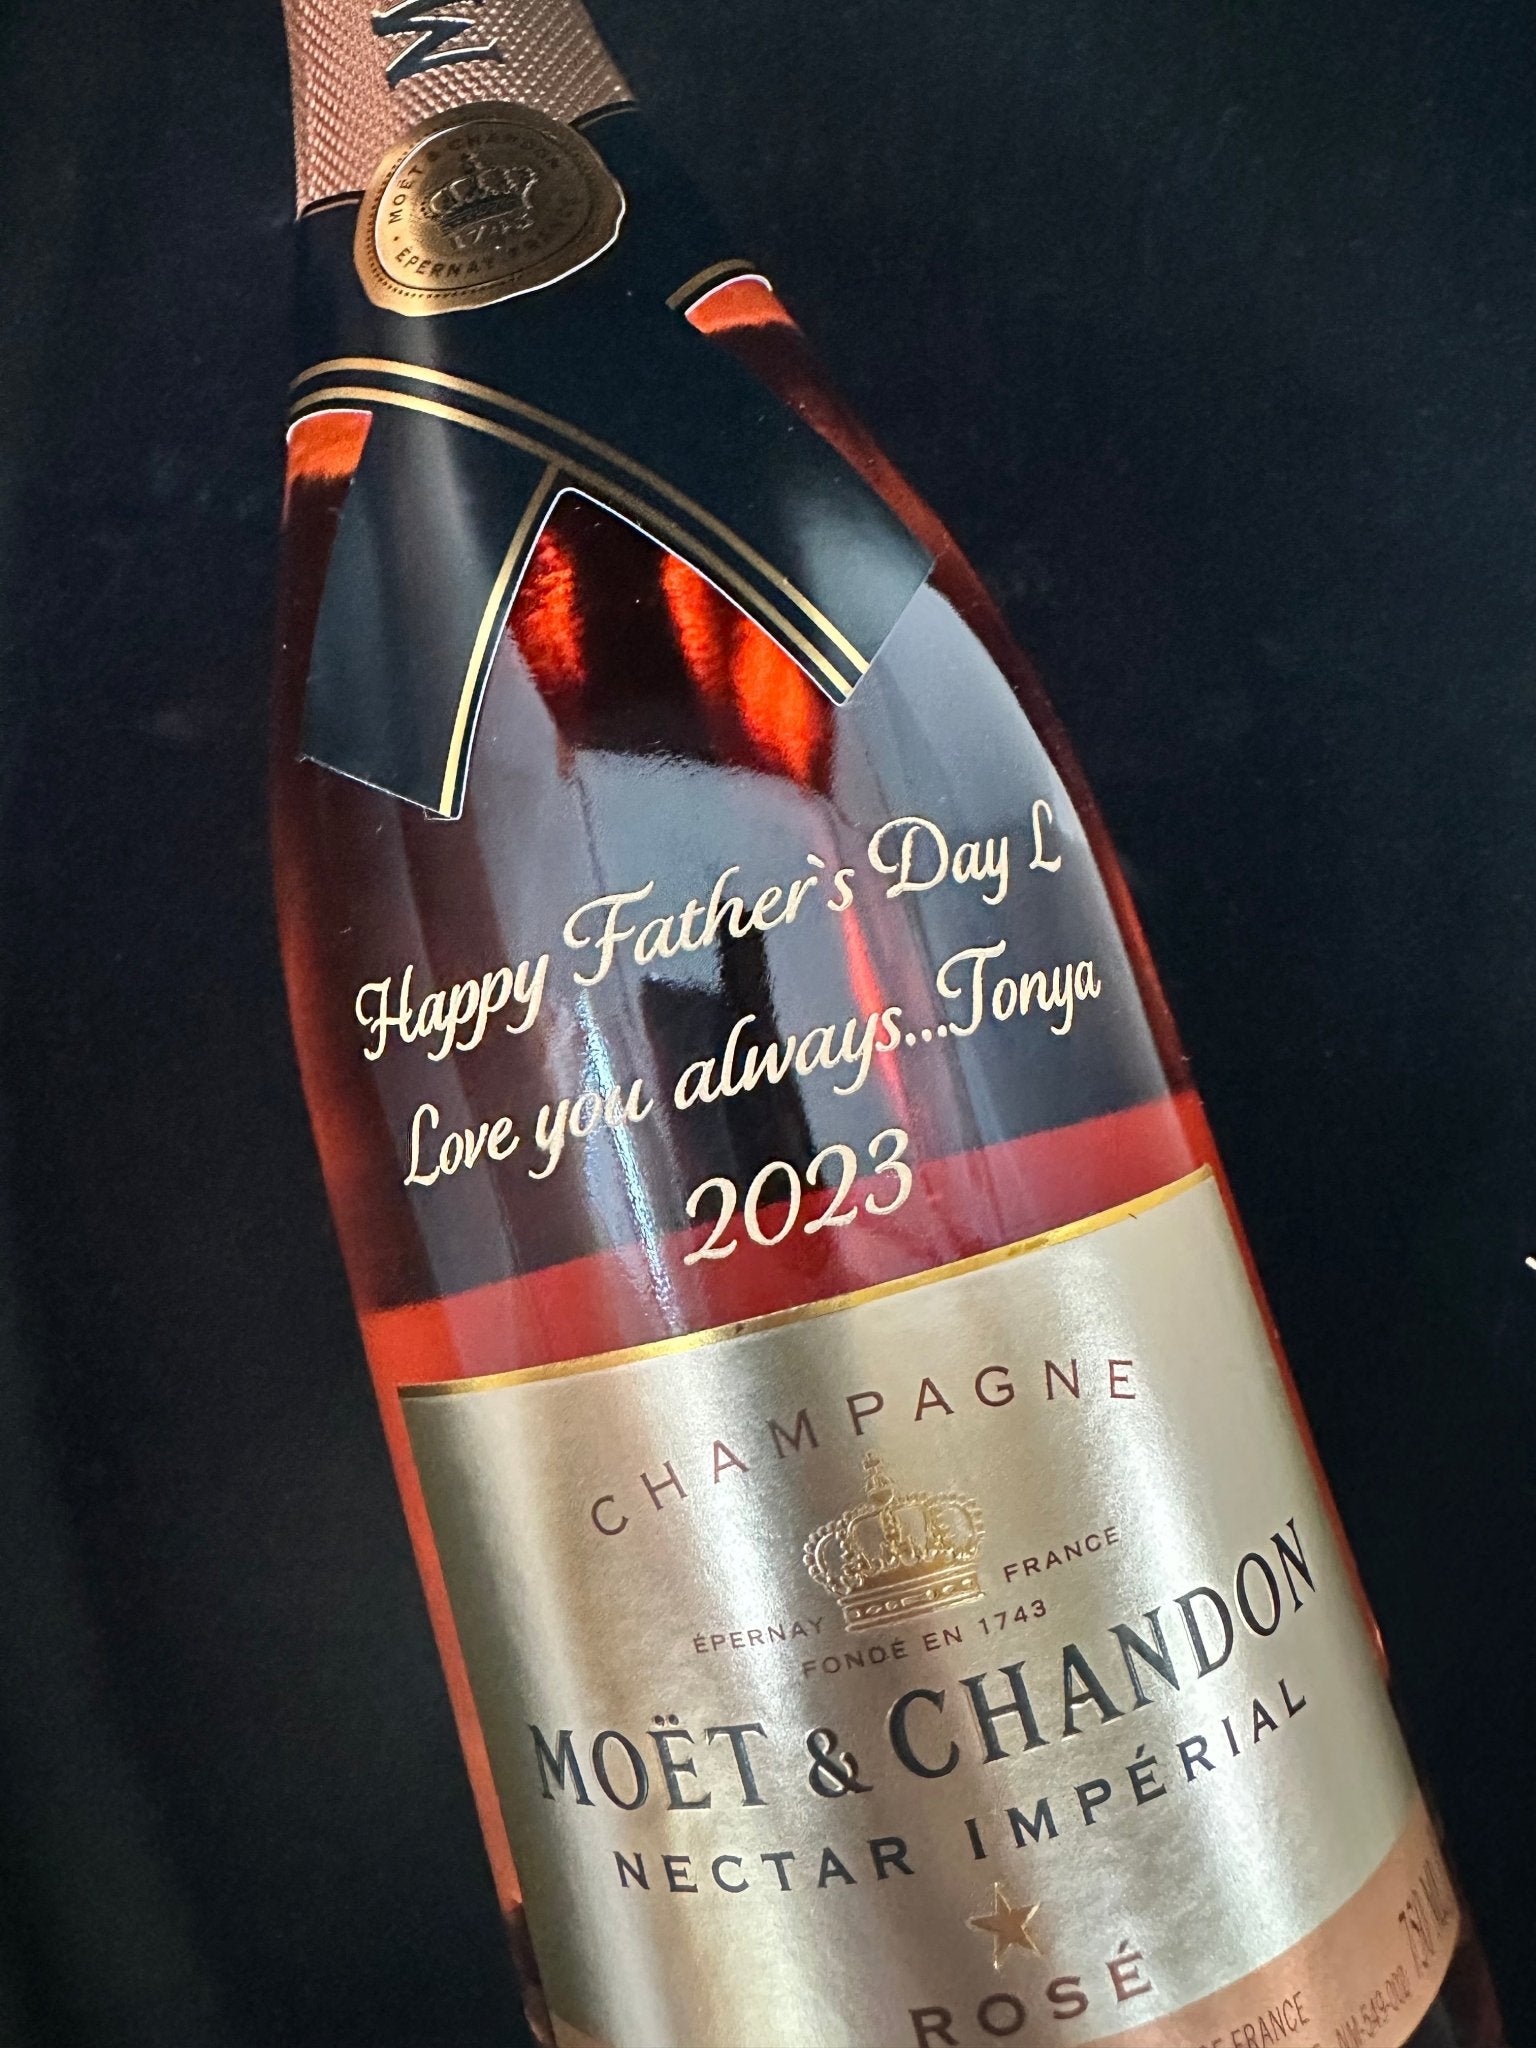 Moët & Chandon Champagne Brut Rose Imperial - Bottle Engraving